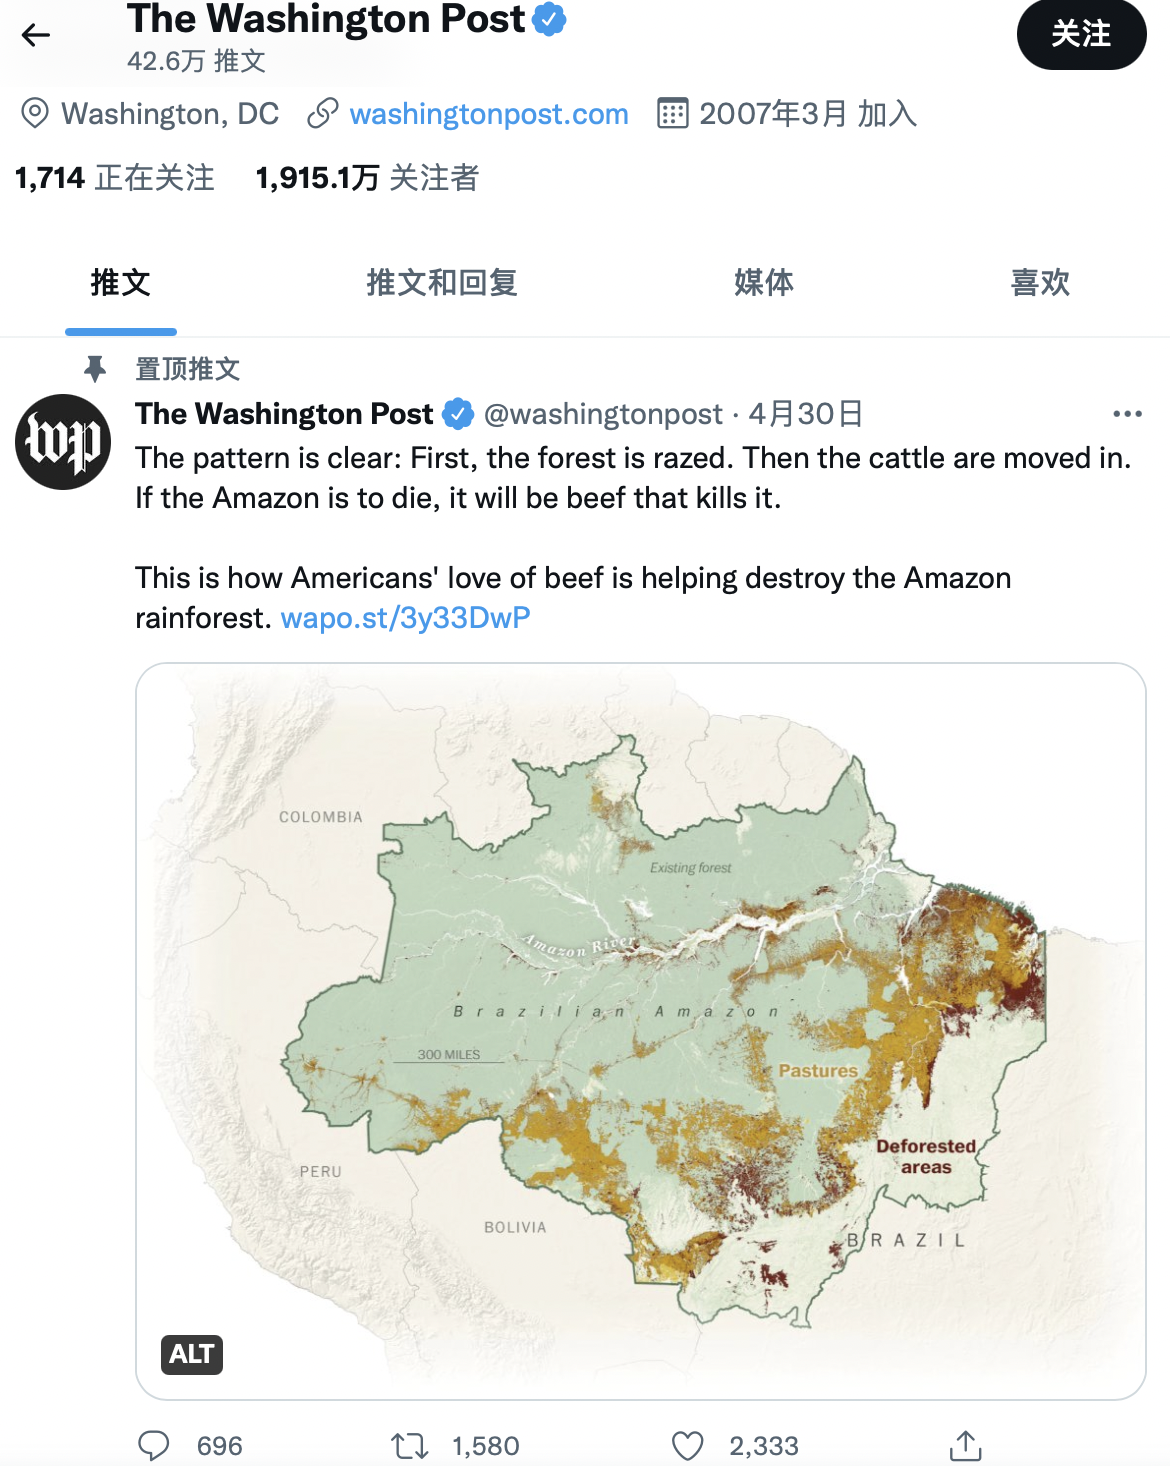 华盛顿邮报至今仍置顶调查报道《吞噬雨林》